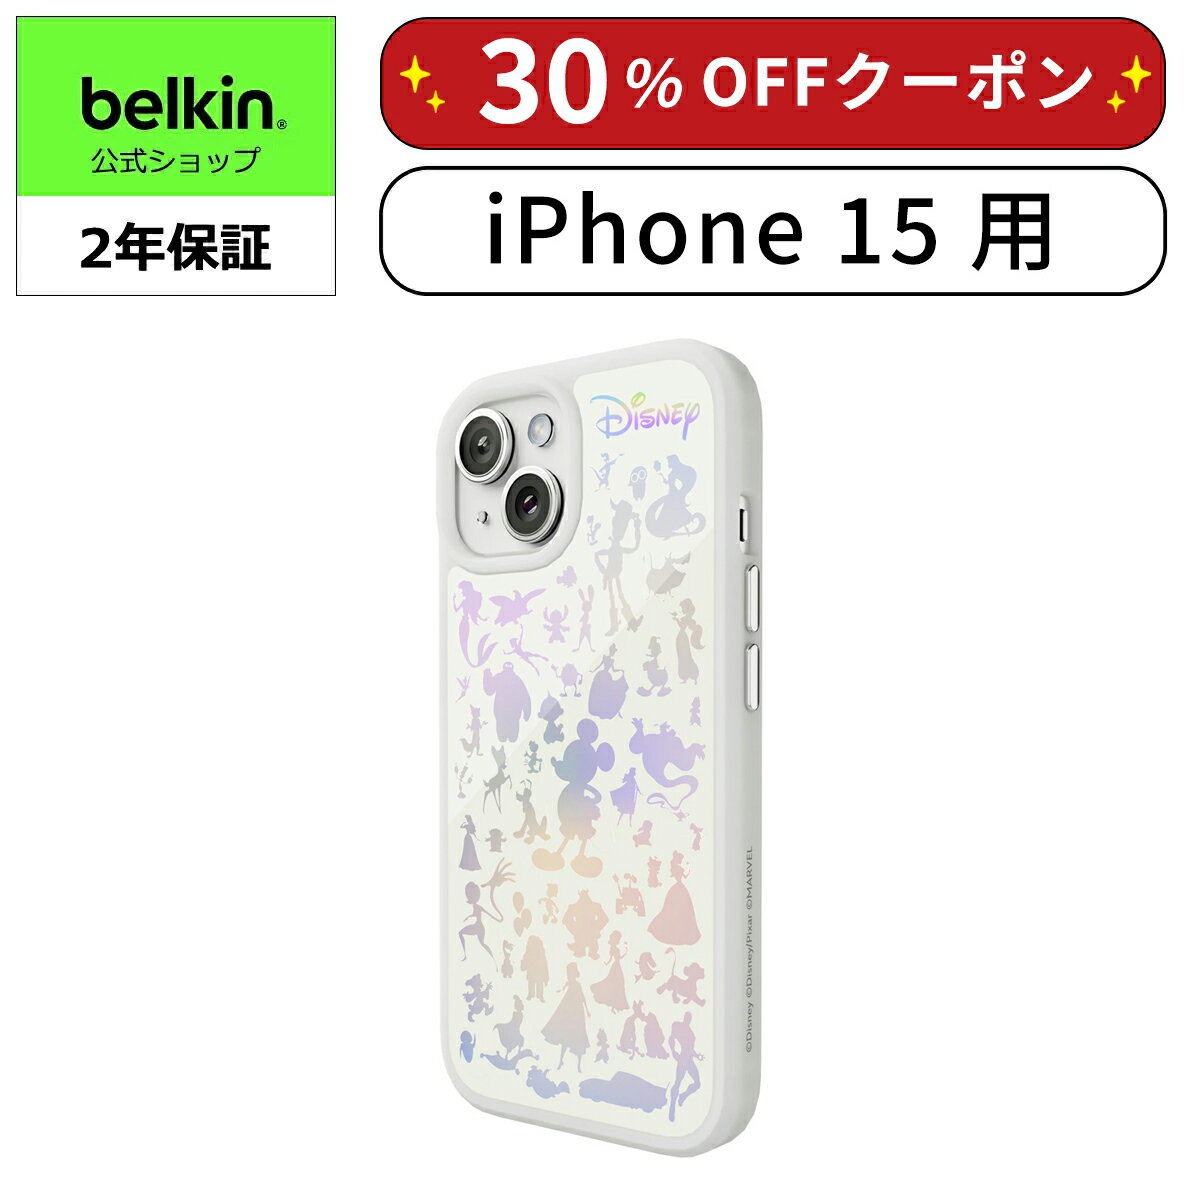 【ディズニー創立100周年限定モデル】Belkin iPhone 15用ケース MagSafe対応 マグネット搭載 薄型 超耐衝撃 UV耐性 黄ばみ防止 ソフトTPU ホワイト MSA016qcWH-DY